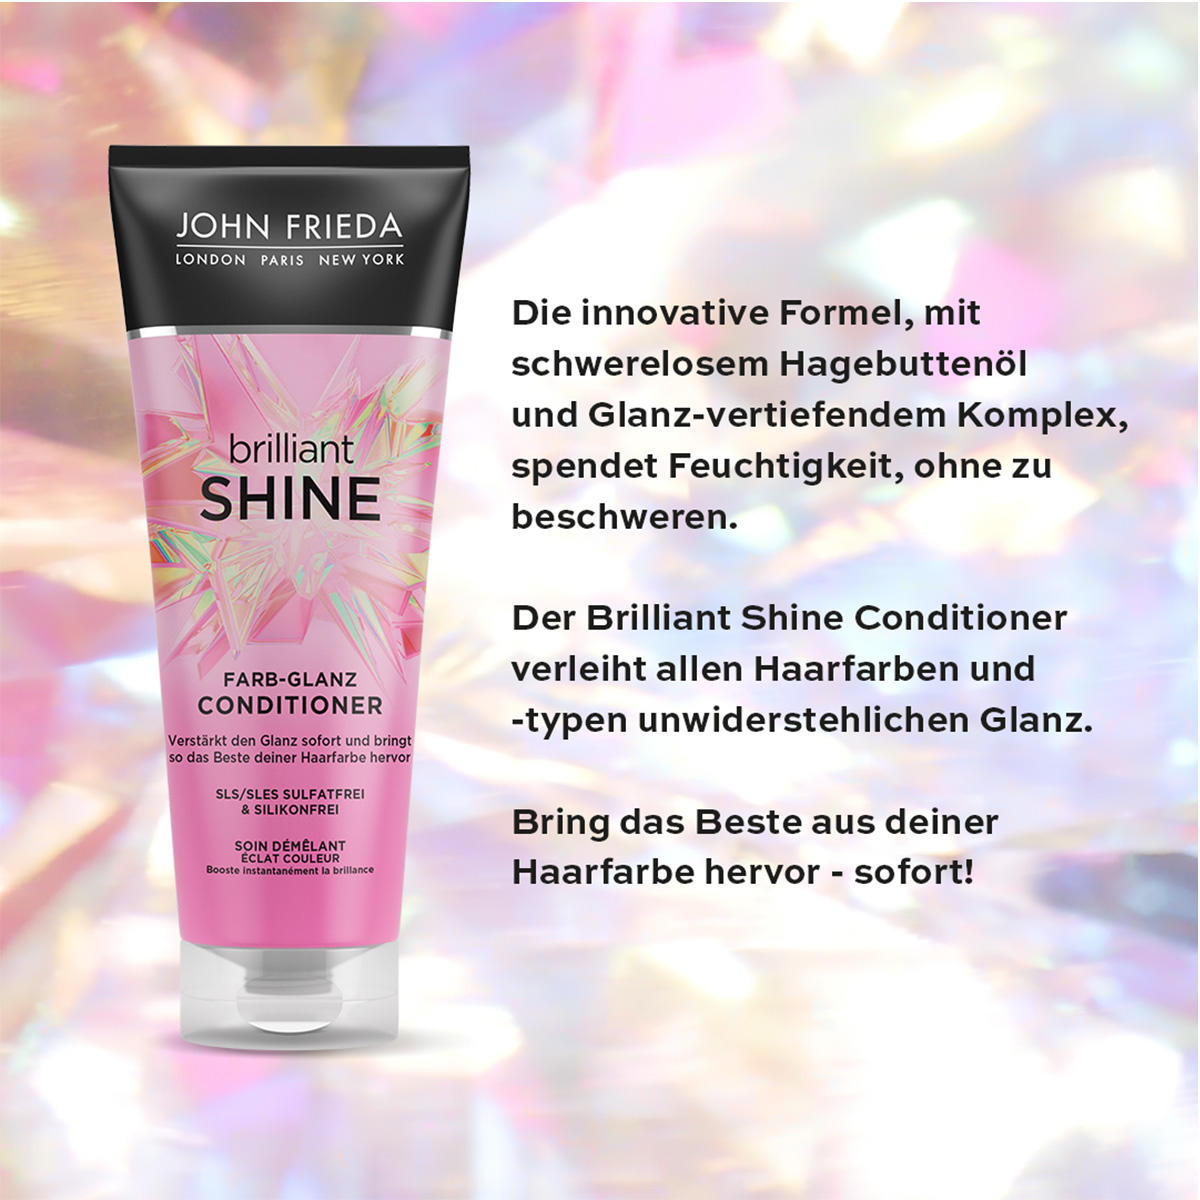 JOHN FRIEDA Brilliant Shine Farb-Glanz Conditioner 250 ml - 3